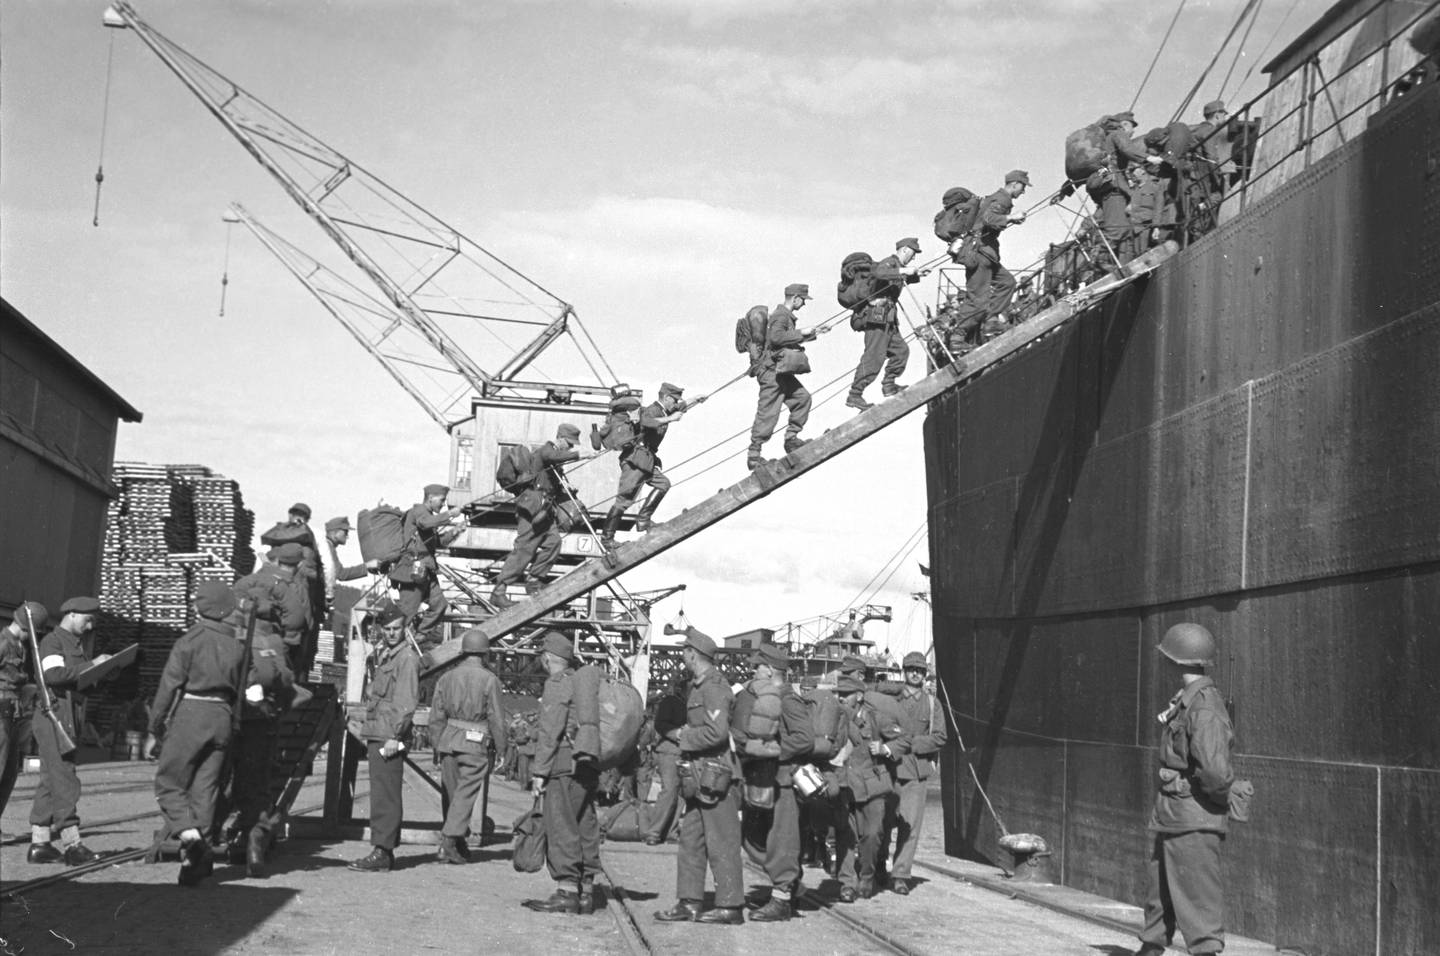 Drammen 19450721. Frigjøringen. Tyske soldater går ombord i skip som skal føre dem til Tyskland etter frigjøringen 1945.
Foto: NTB arkiv / Scanpix